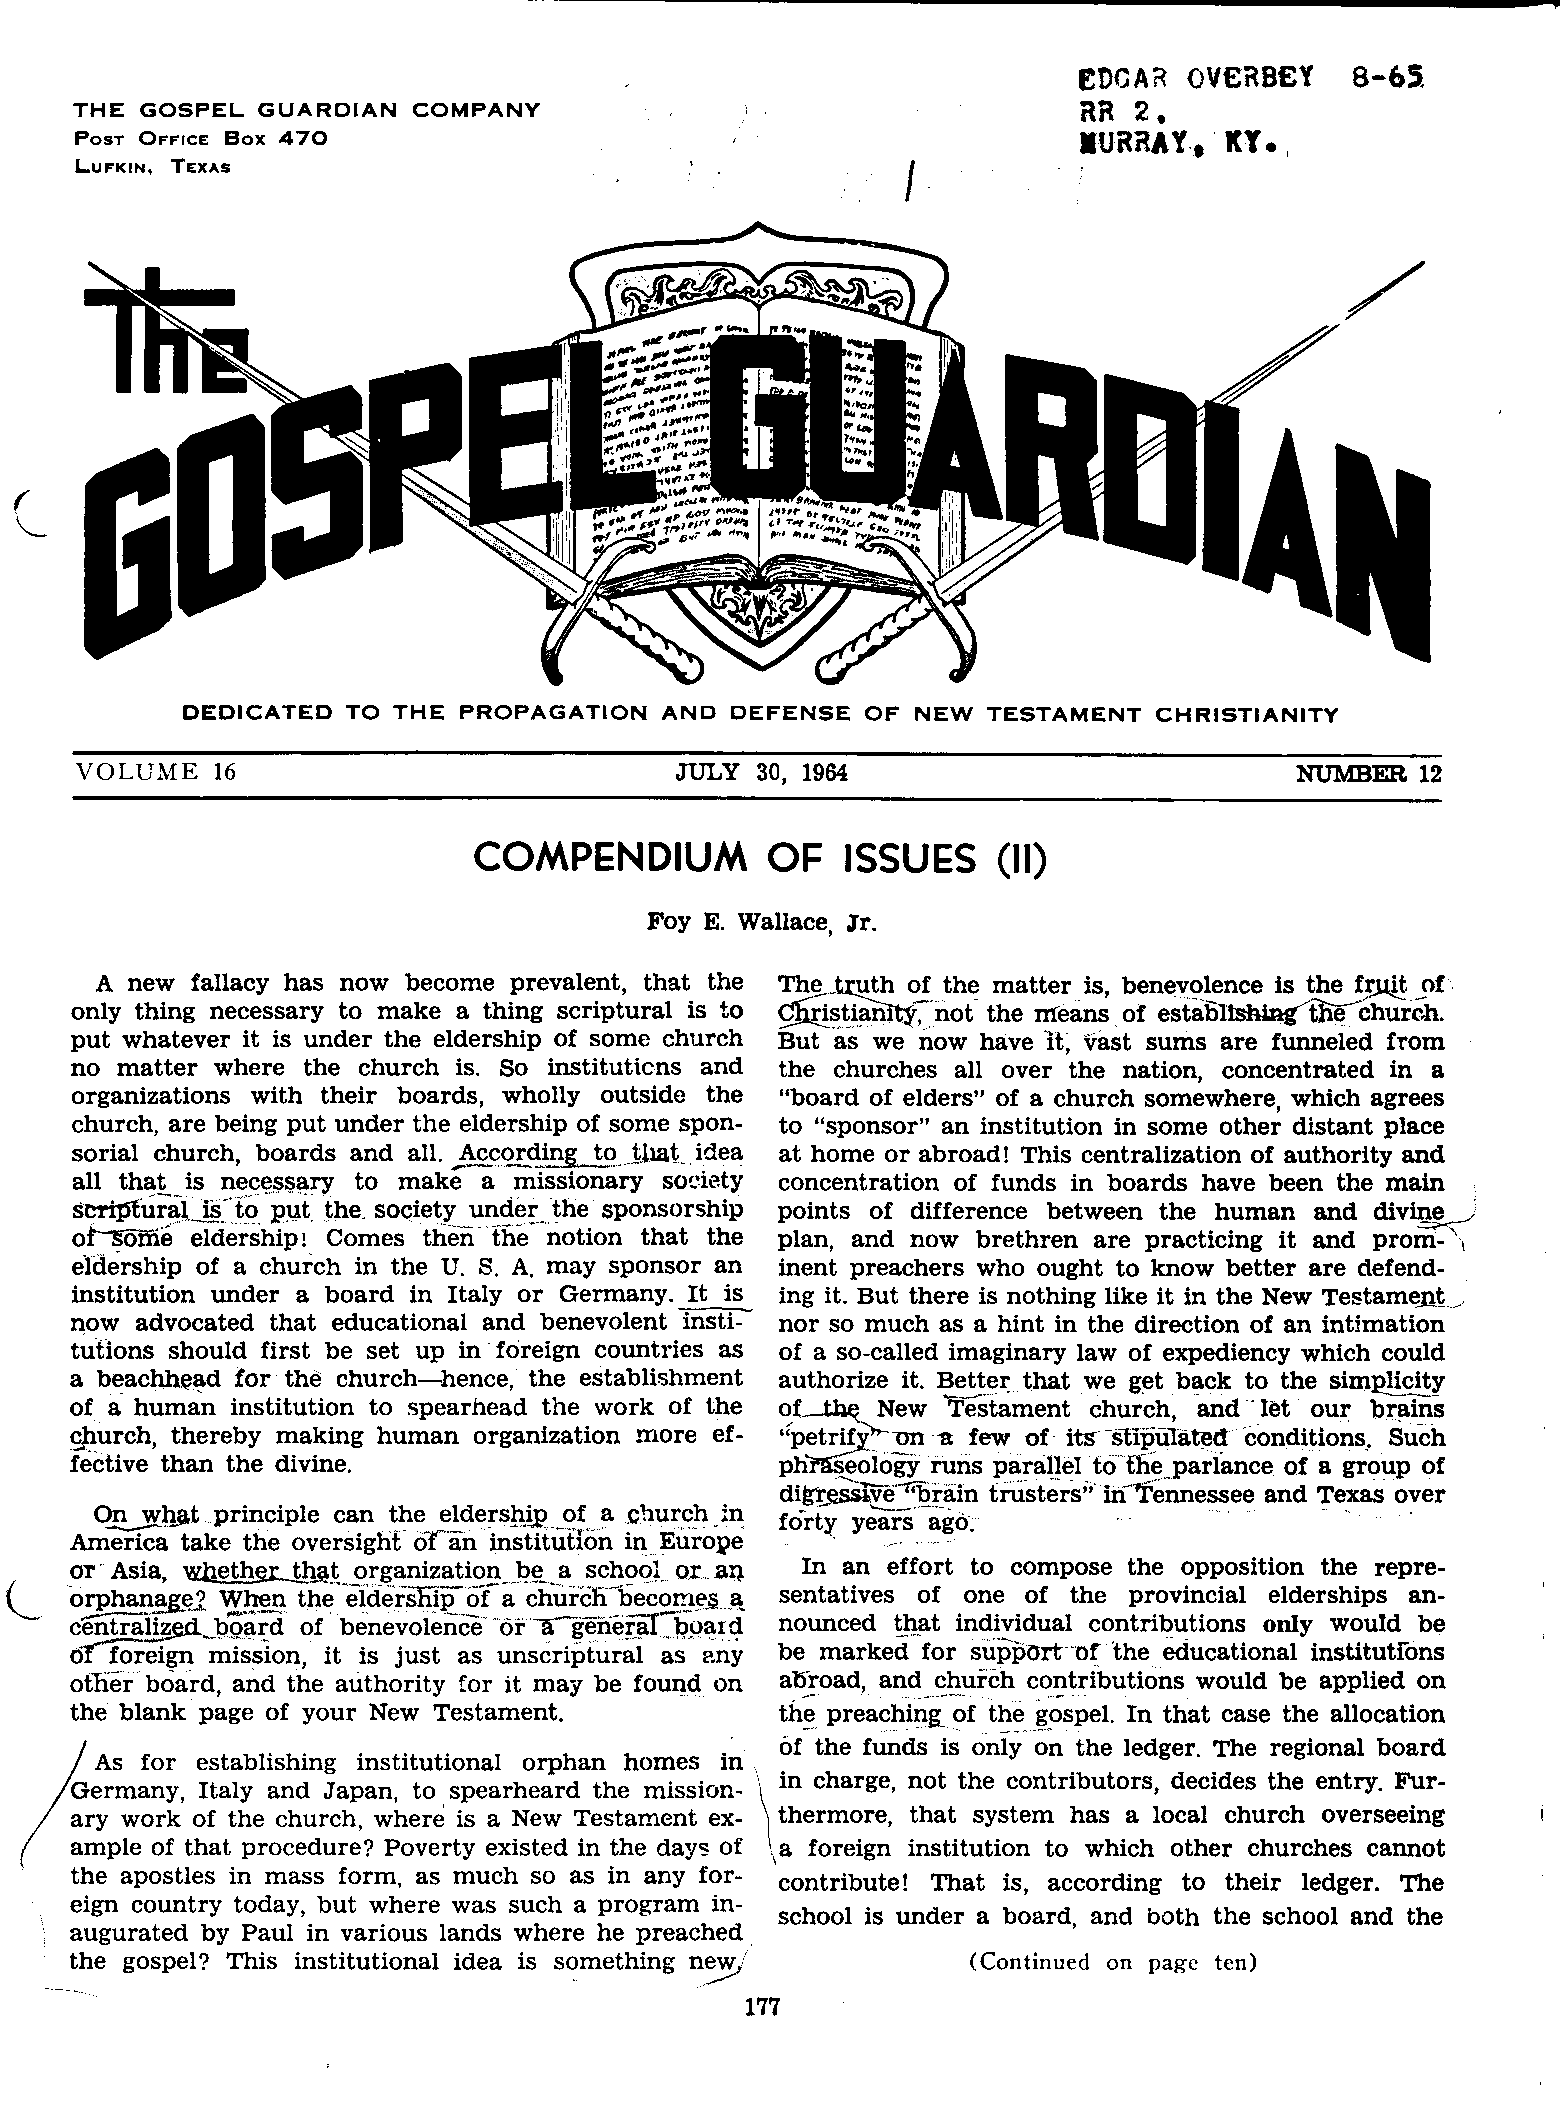 Gospel Guardian Original: Vol.16 No.12 Pg.1